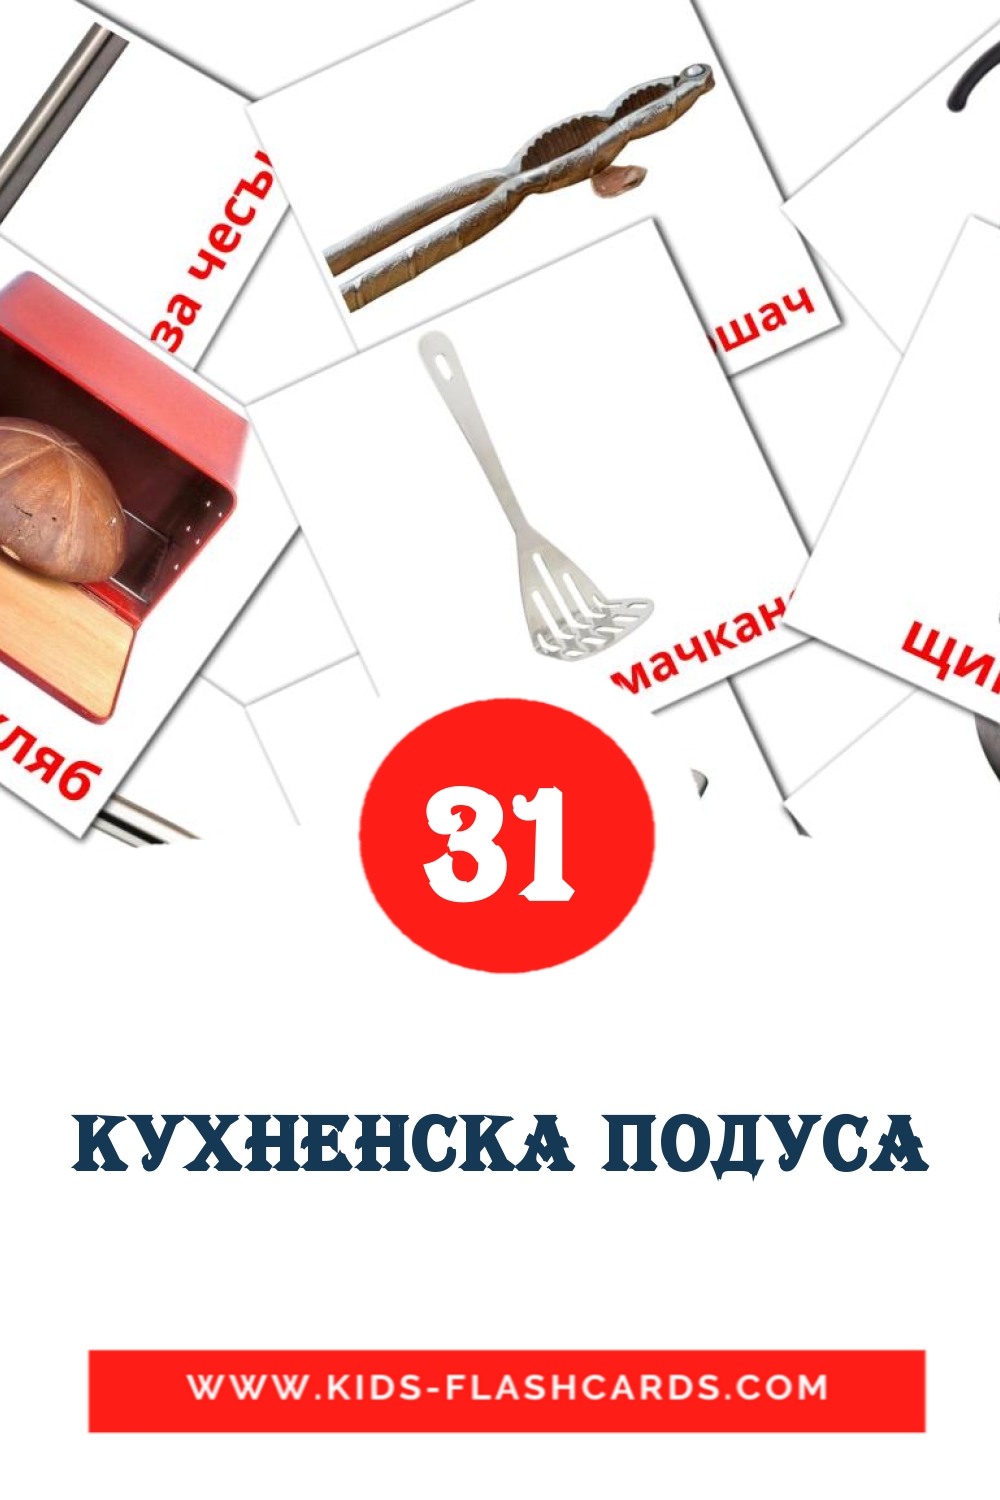 31 Cartões com Imagens de Кухненска подуса para Jardim de Infância em búlgaro